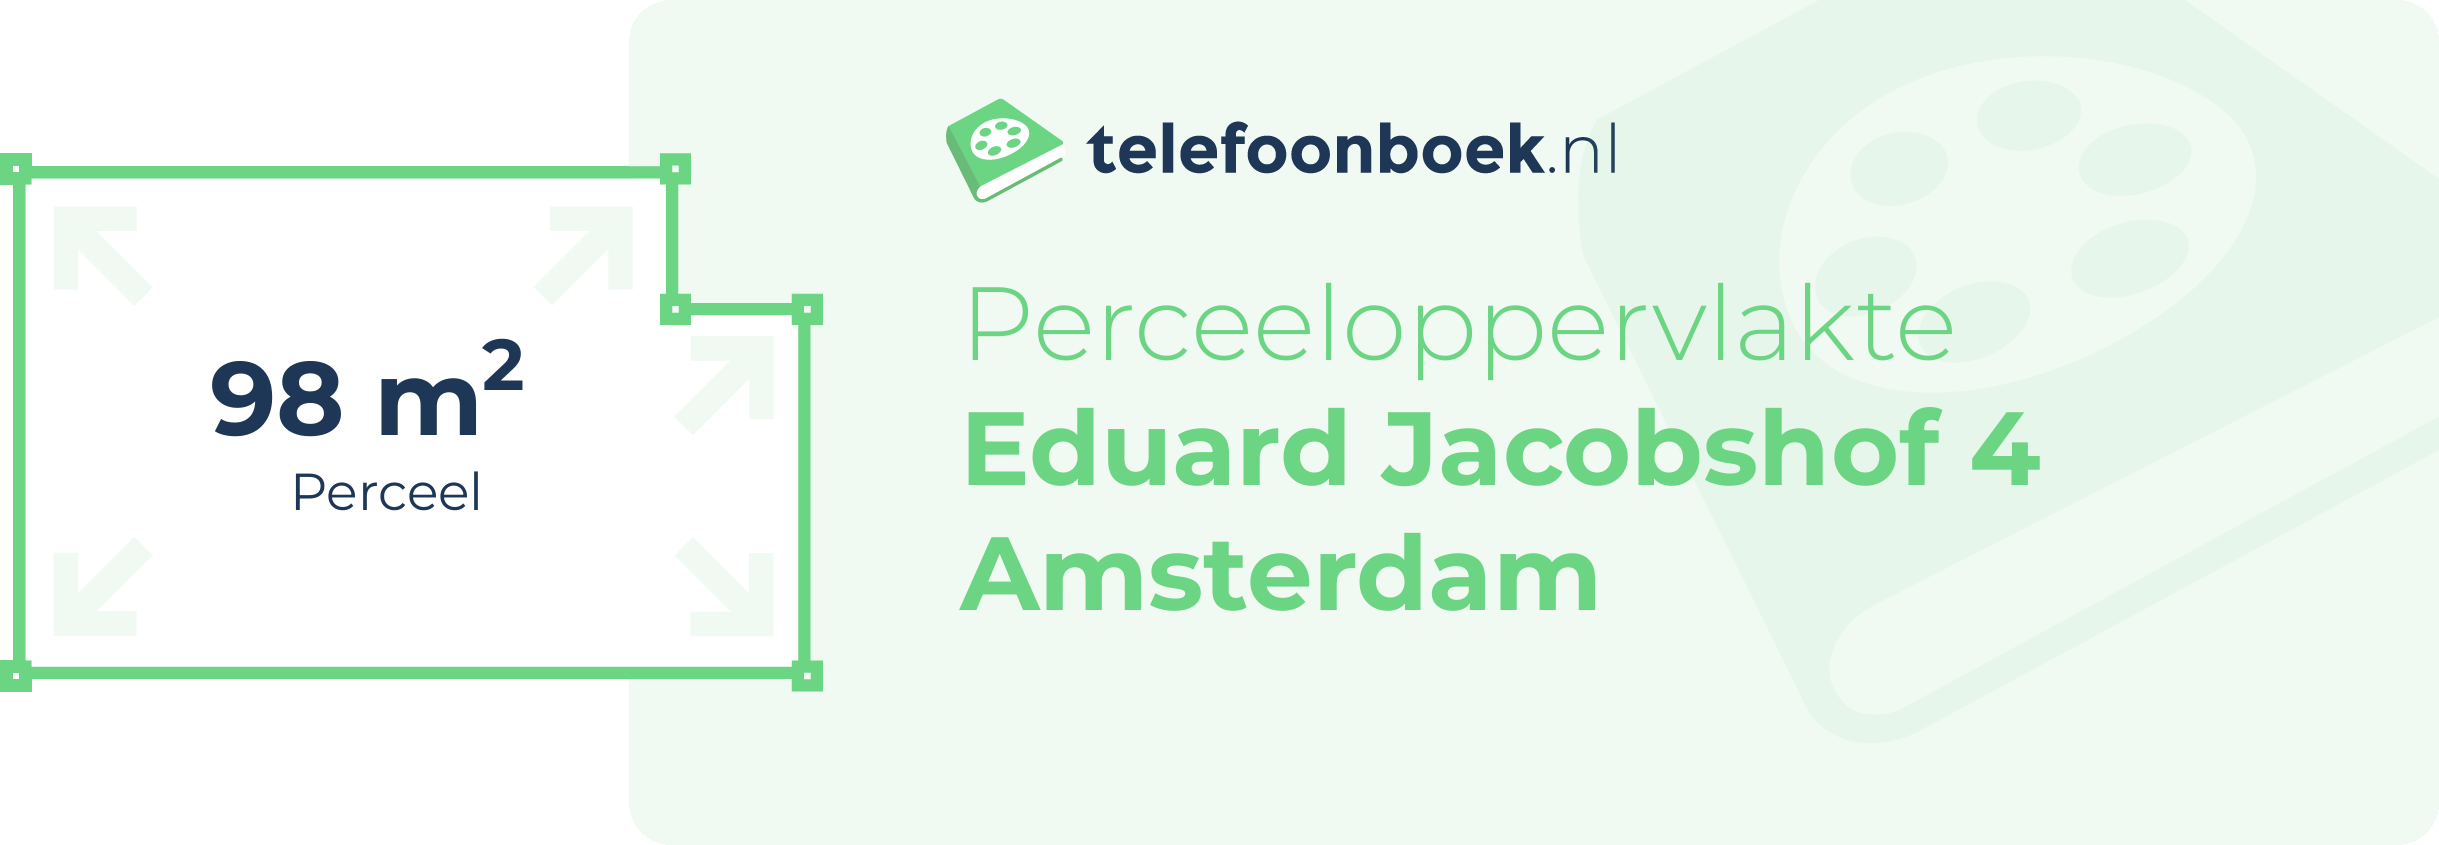 Perceeloppervlakte Eduard Jacobshof 4 Amsterdam